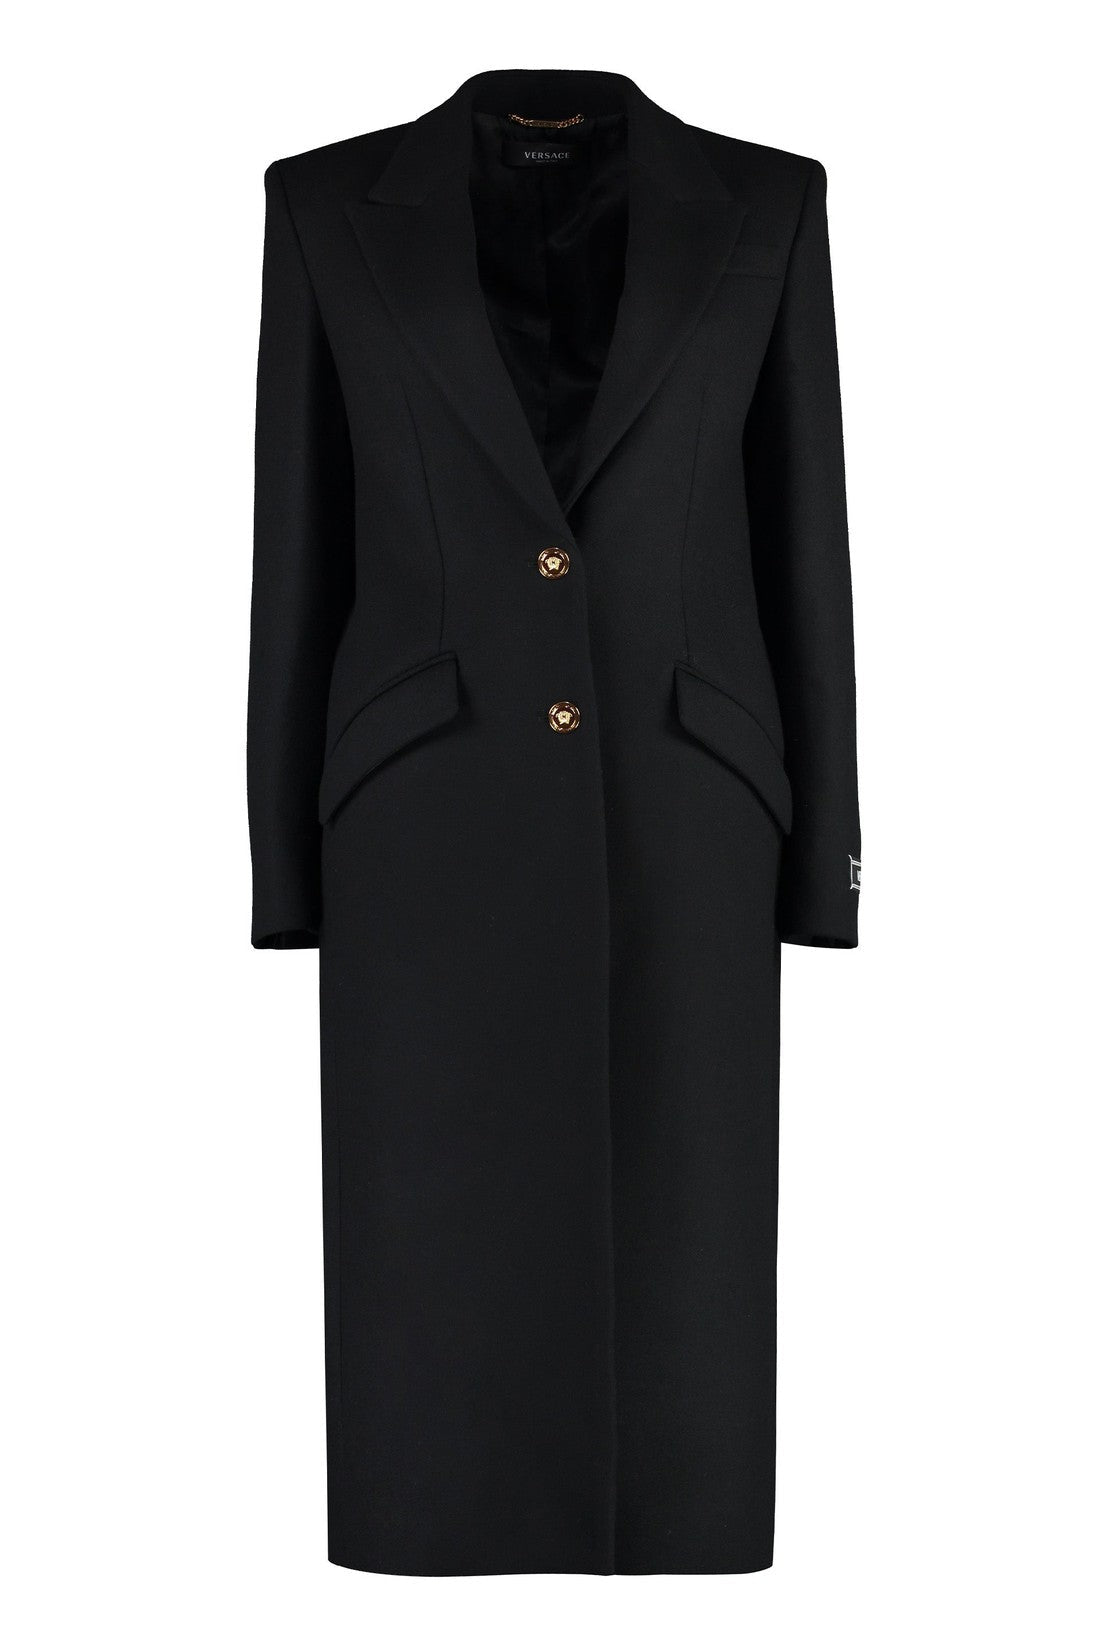 Versace-OUTLET-SALE-Wool blend coat-ARCHIVIST